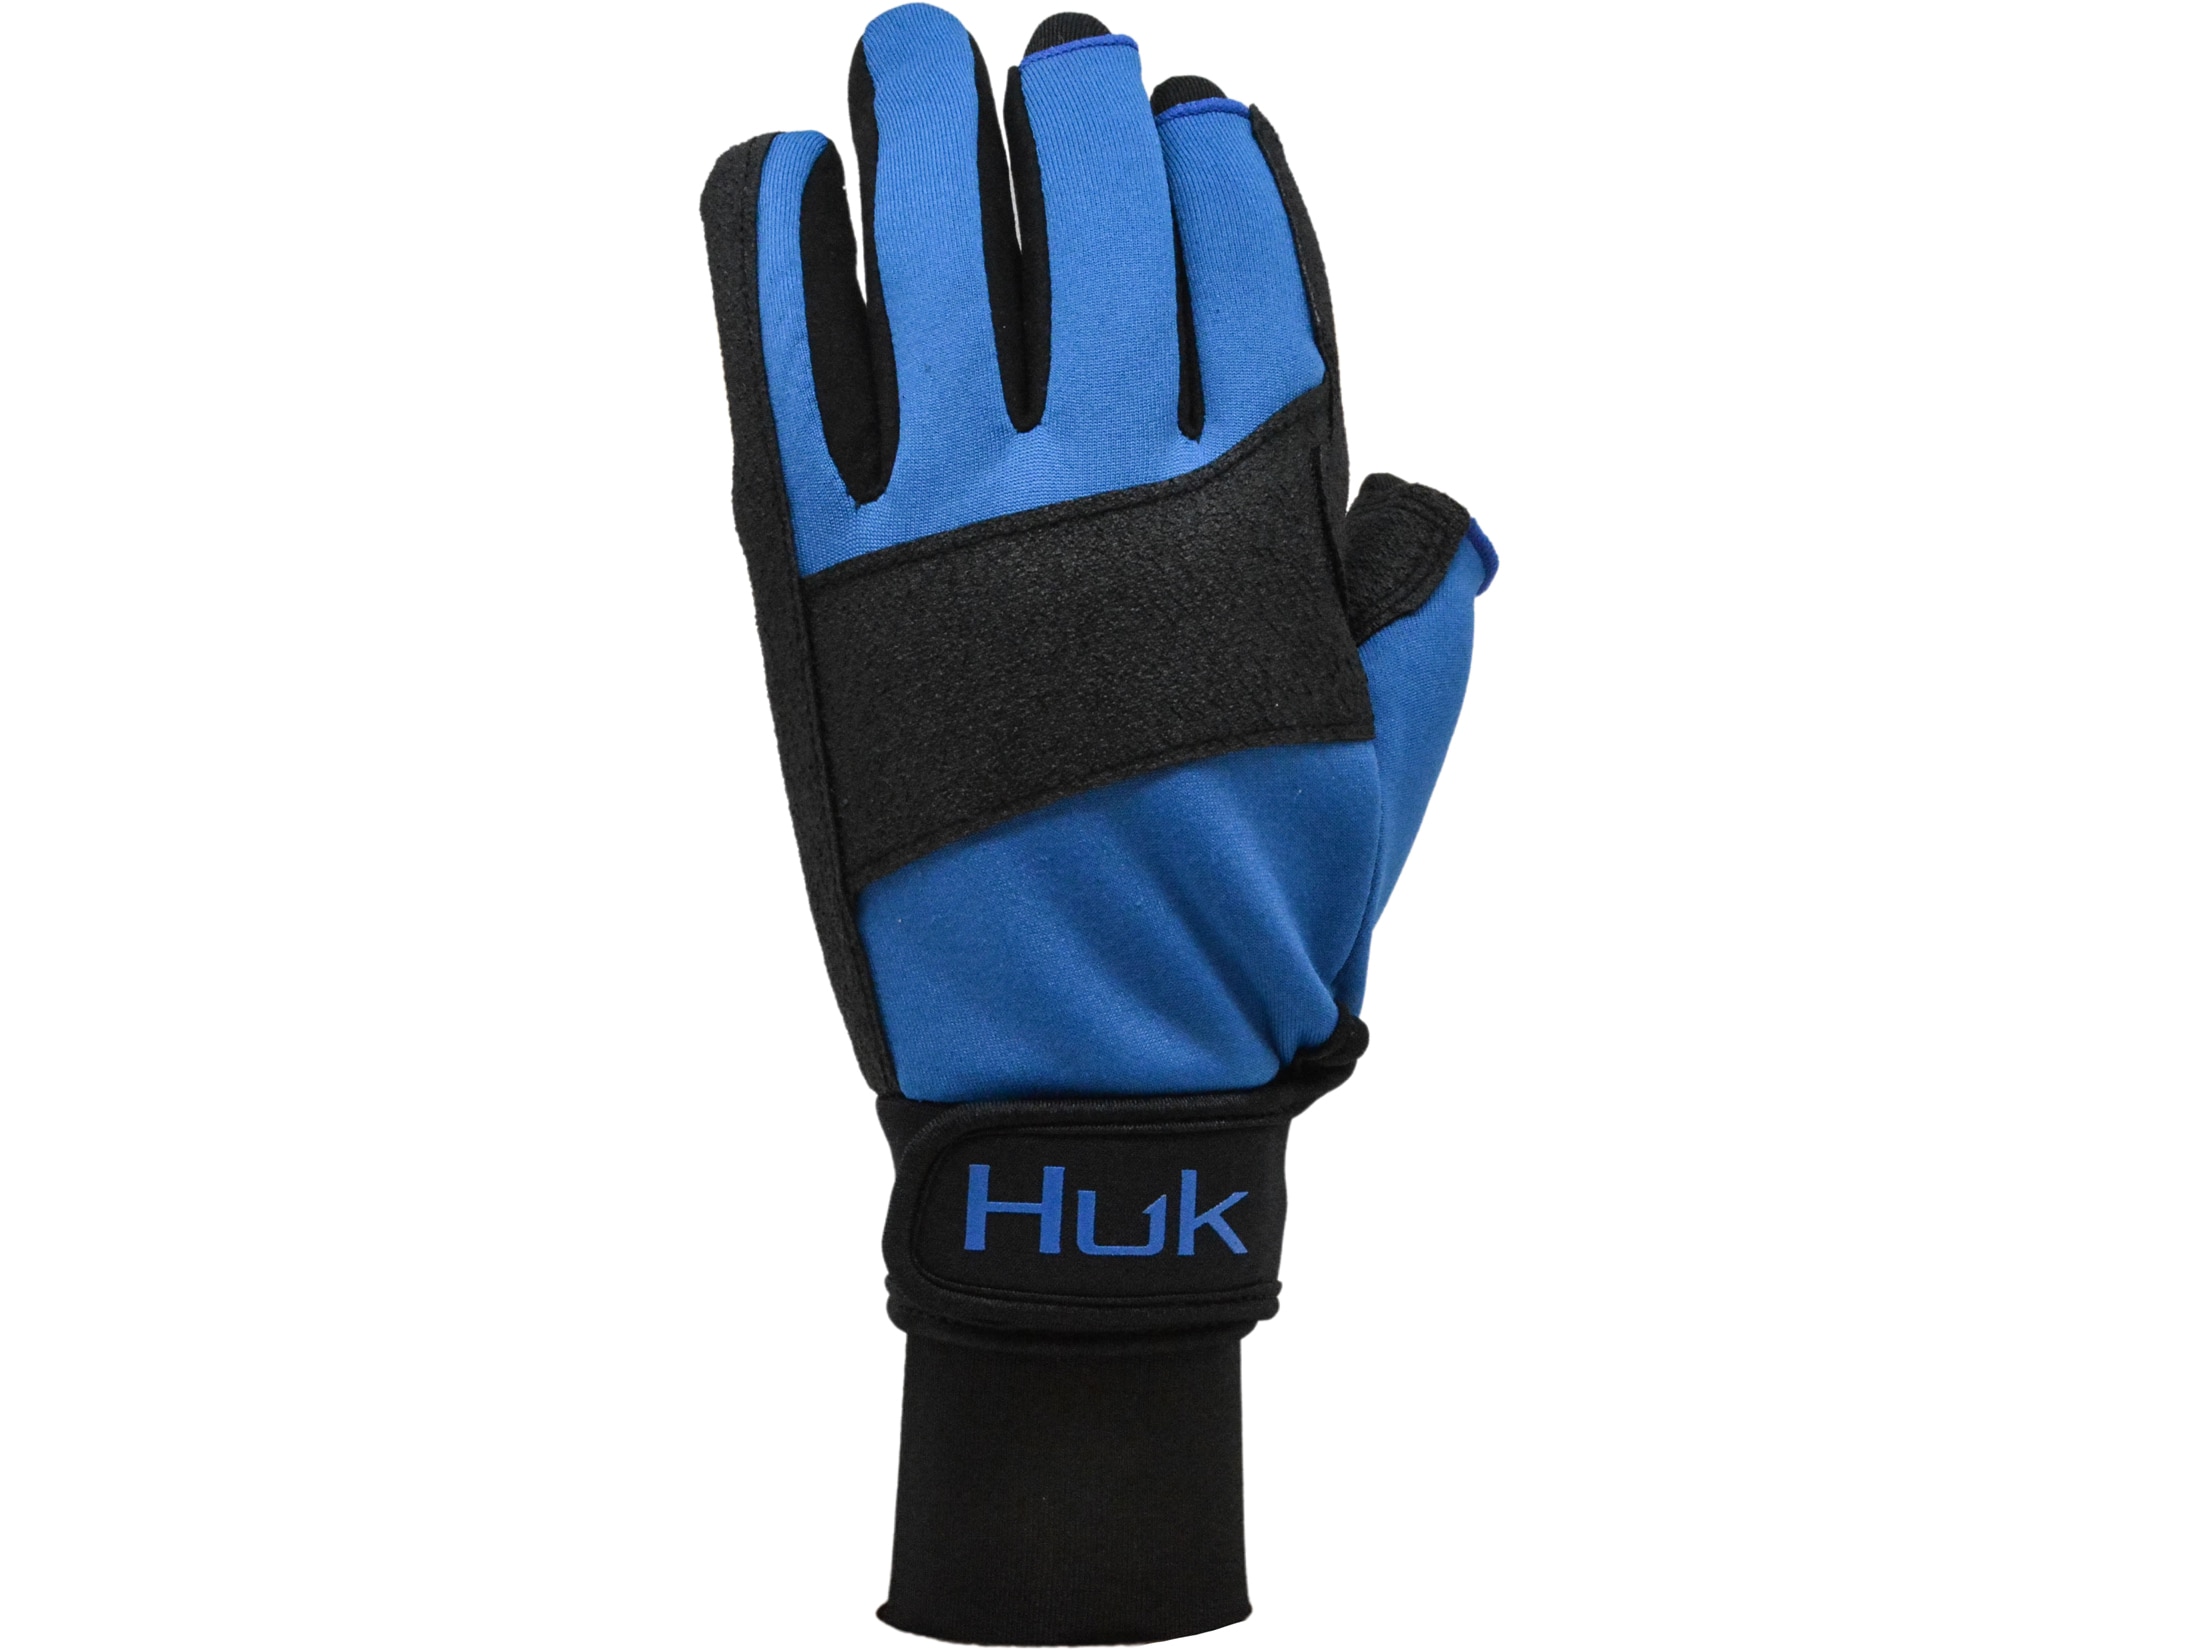 Huk Men's Wiring Fishing Gloves Huk Blue Large/XL